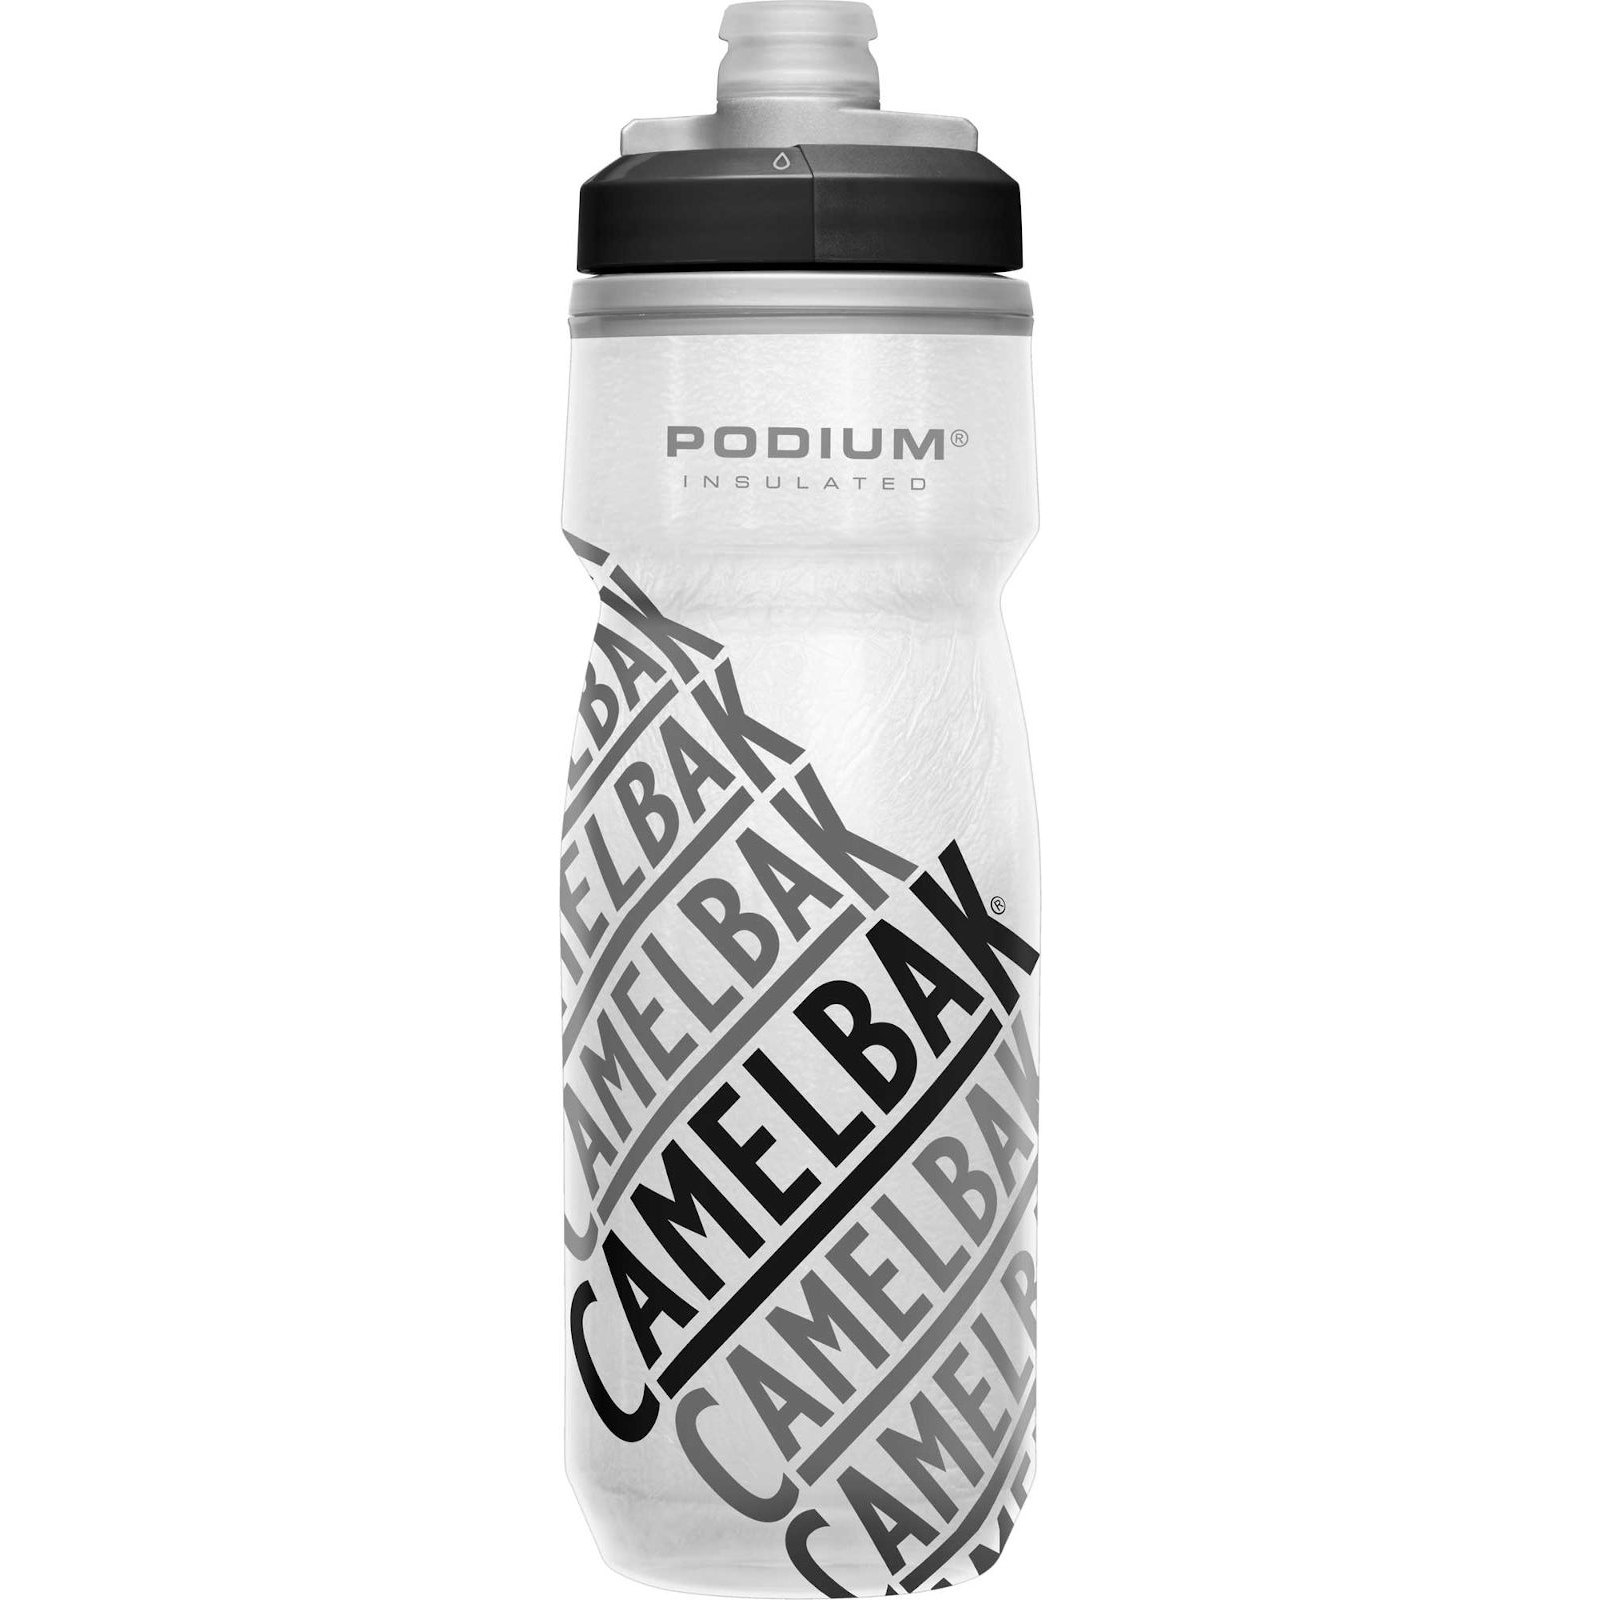 Produktbild von CamelBak Podium Chill Thermo-Trinkflasche 620ml - Race Edition